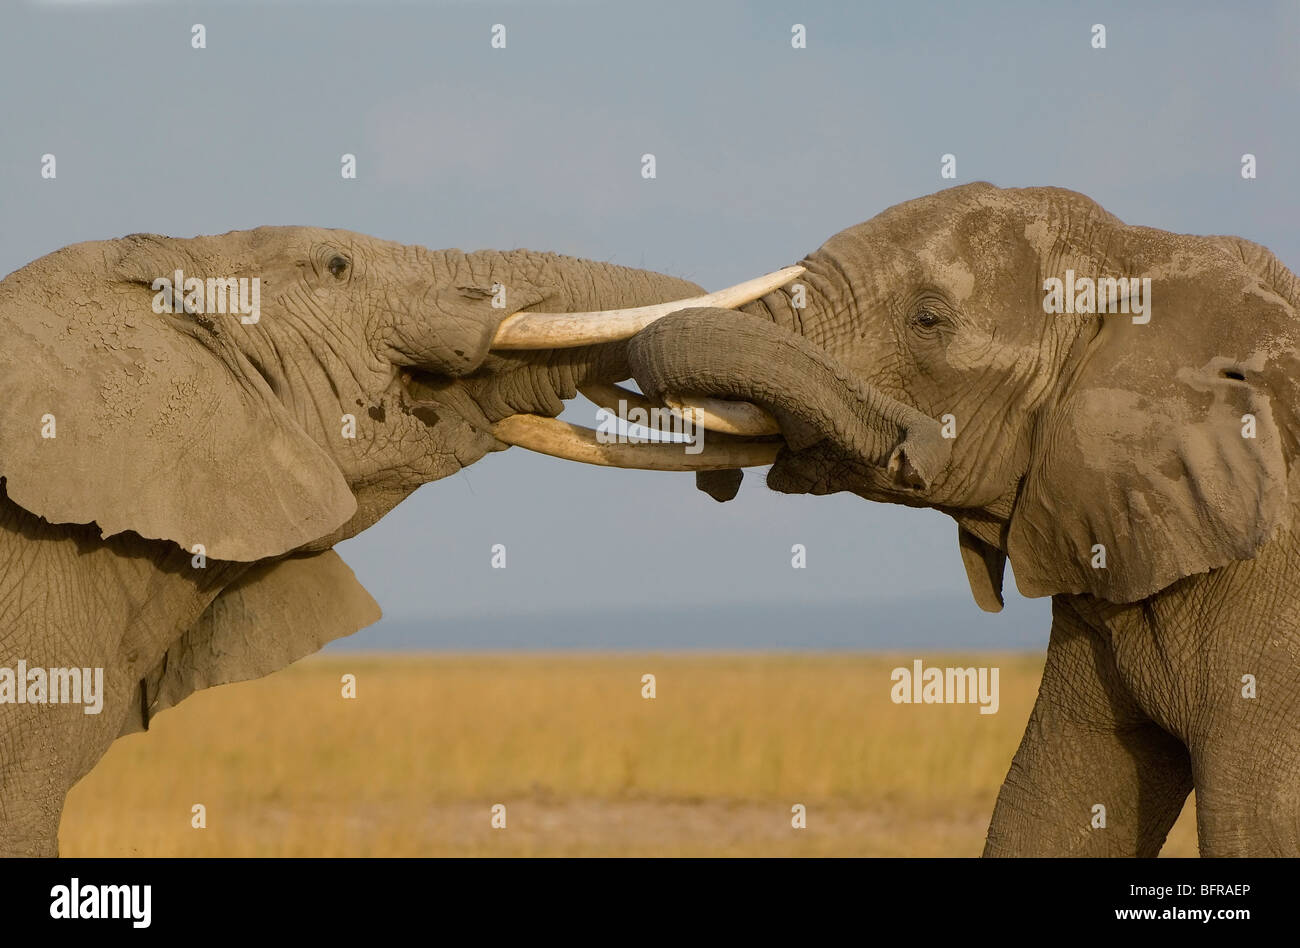 Dos elefantes machos empujar y empujar con sus troncos en un sparring coincidan. Foto de stock